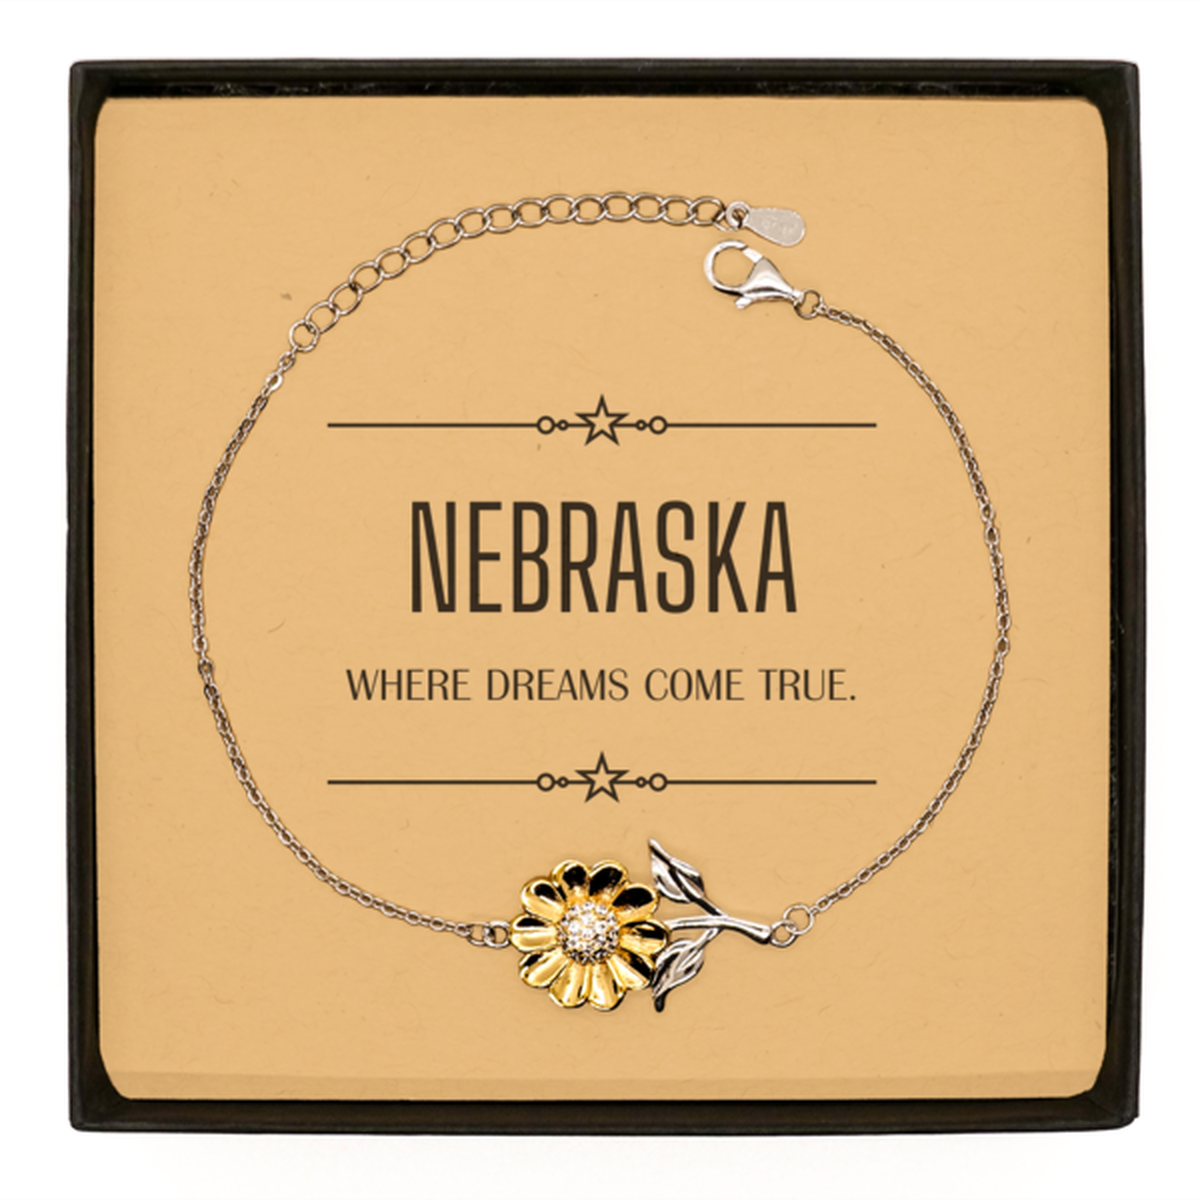 Love Nebraska State Sunflower Bracelet, Nebraska Where dreams come true, Birthday Inspirational Gifts For Nebraska Men, Women, Friends